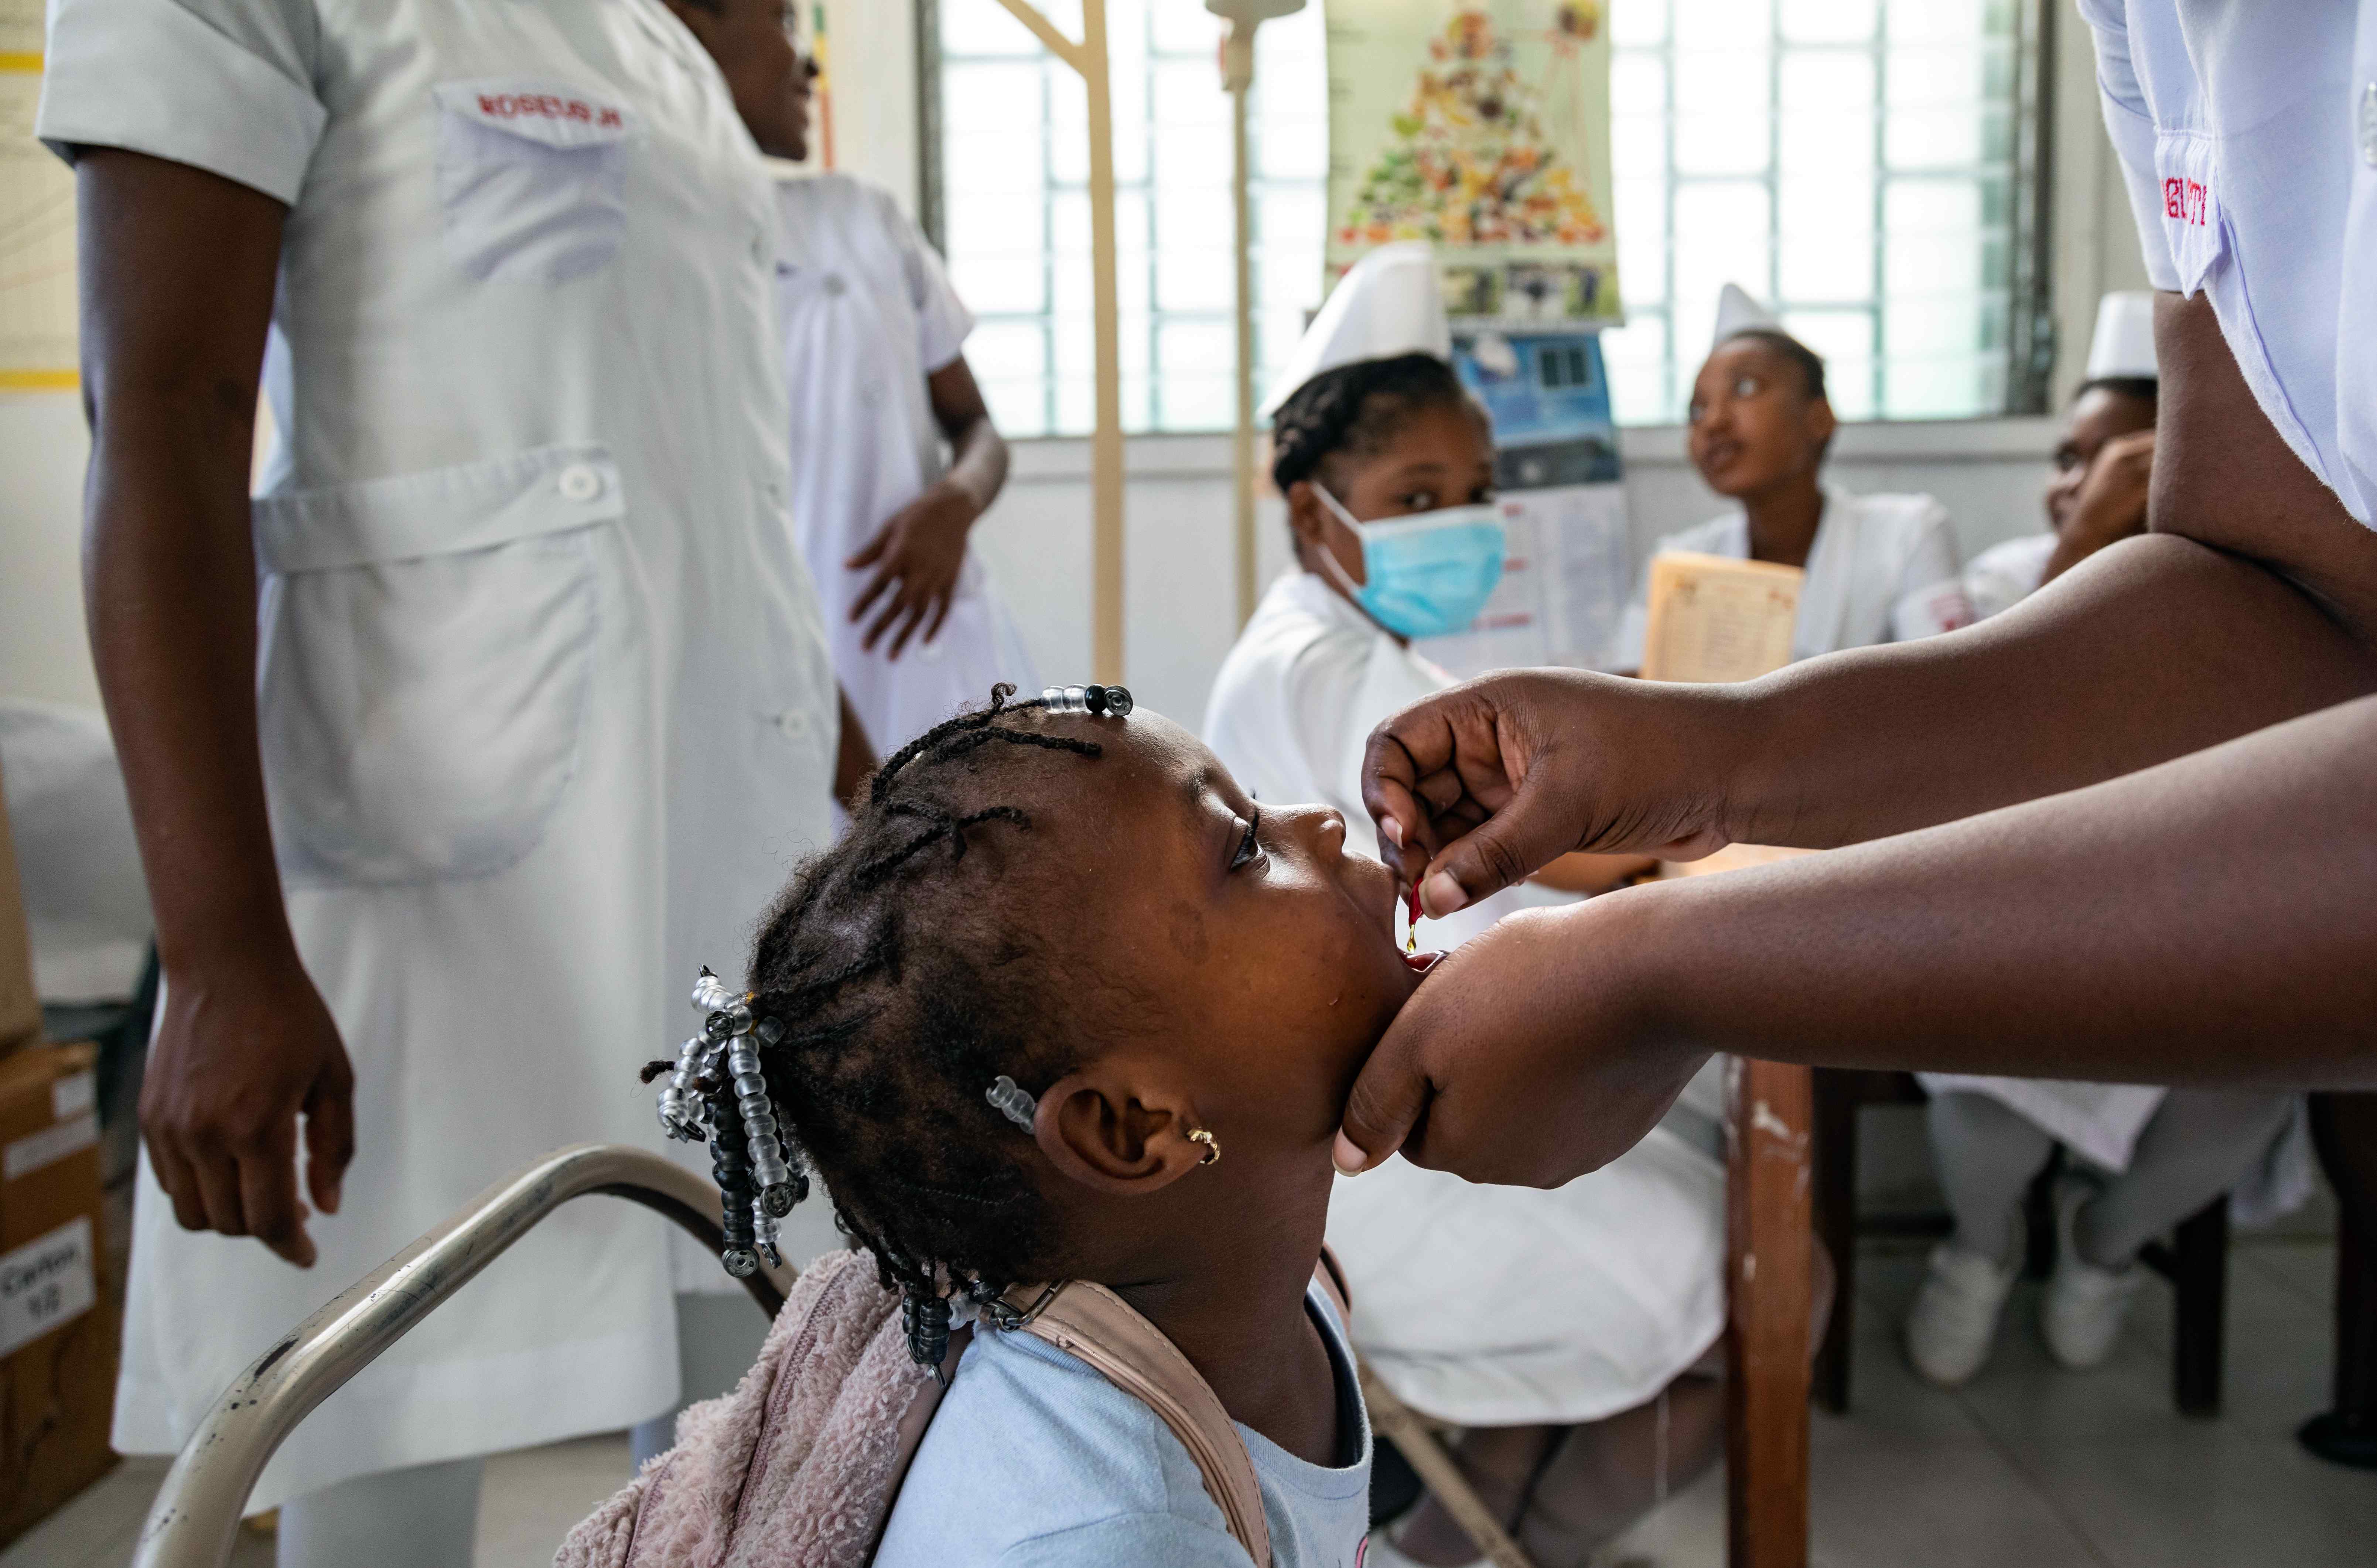 Une jeune fille reçoit une dose de vitamine A dans un hôpital en Haïti.